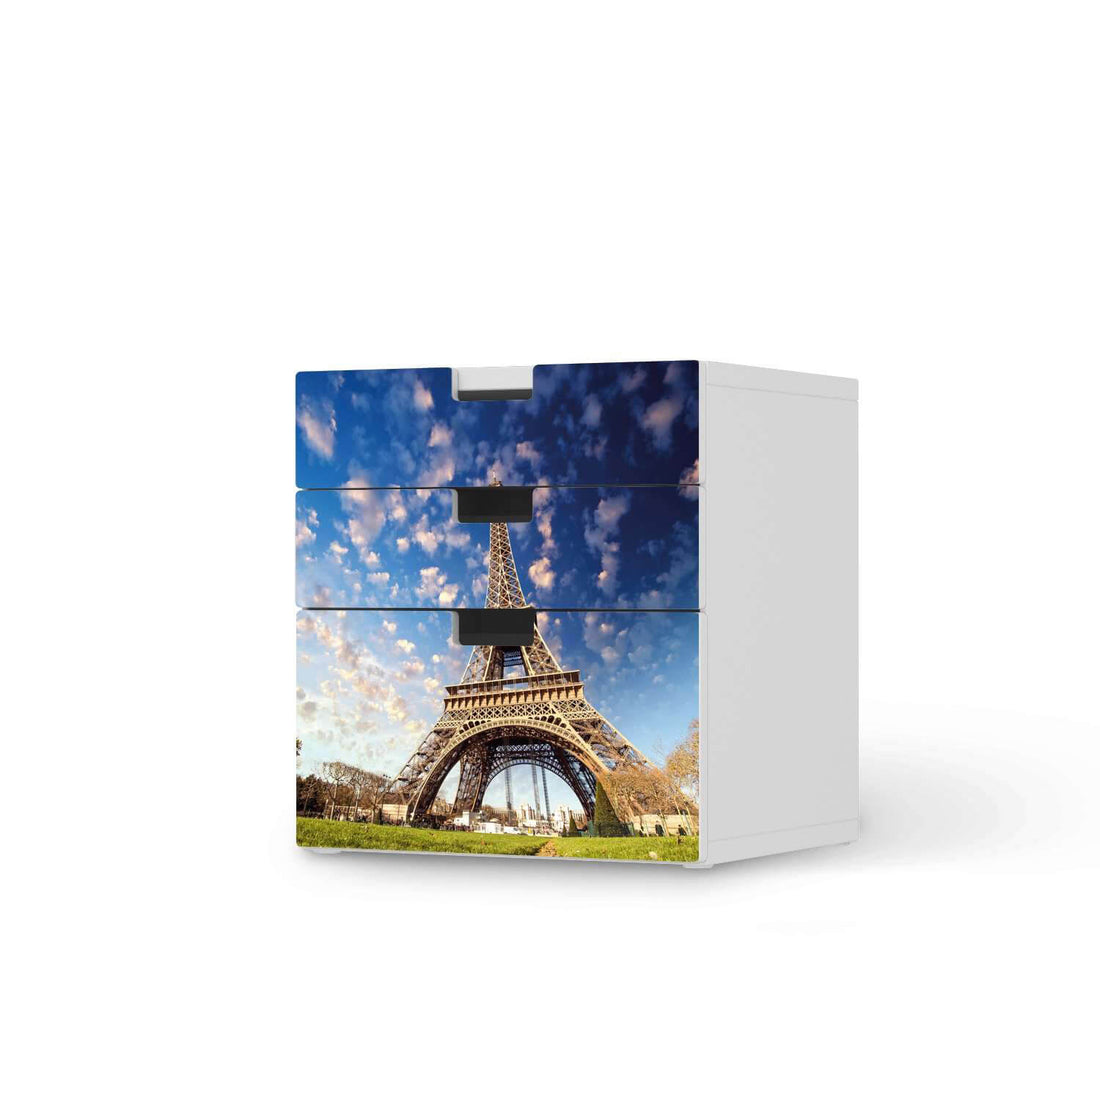 Folie für Möbel La Tour Eiffel - IKEA Stuva Kommode - 3 Schubladen (Kombination 1)  - weiss